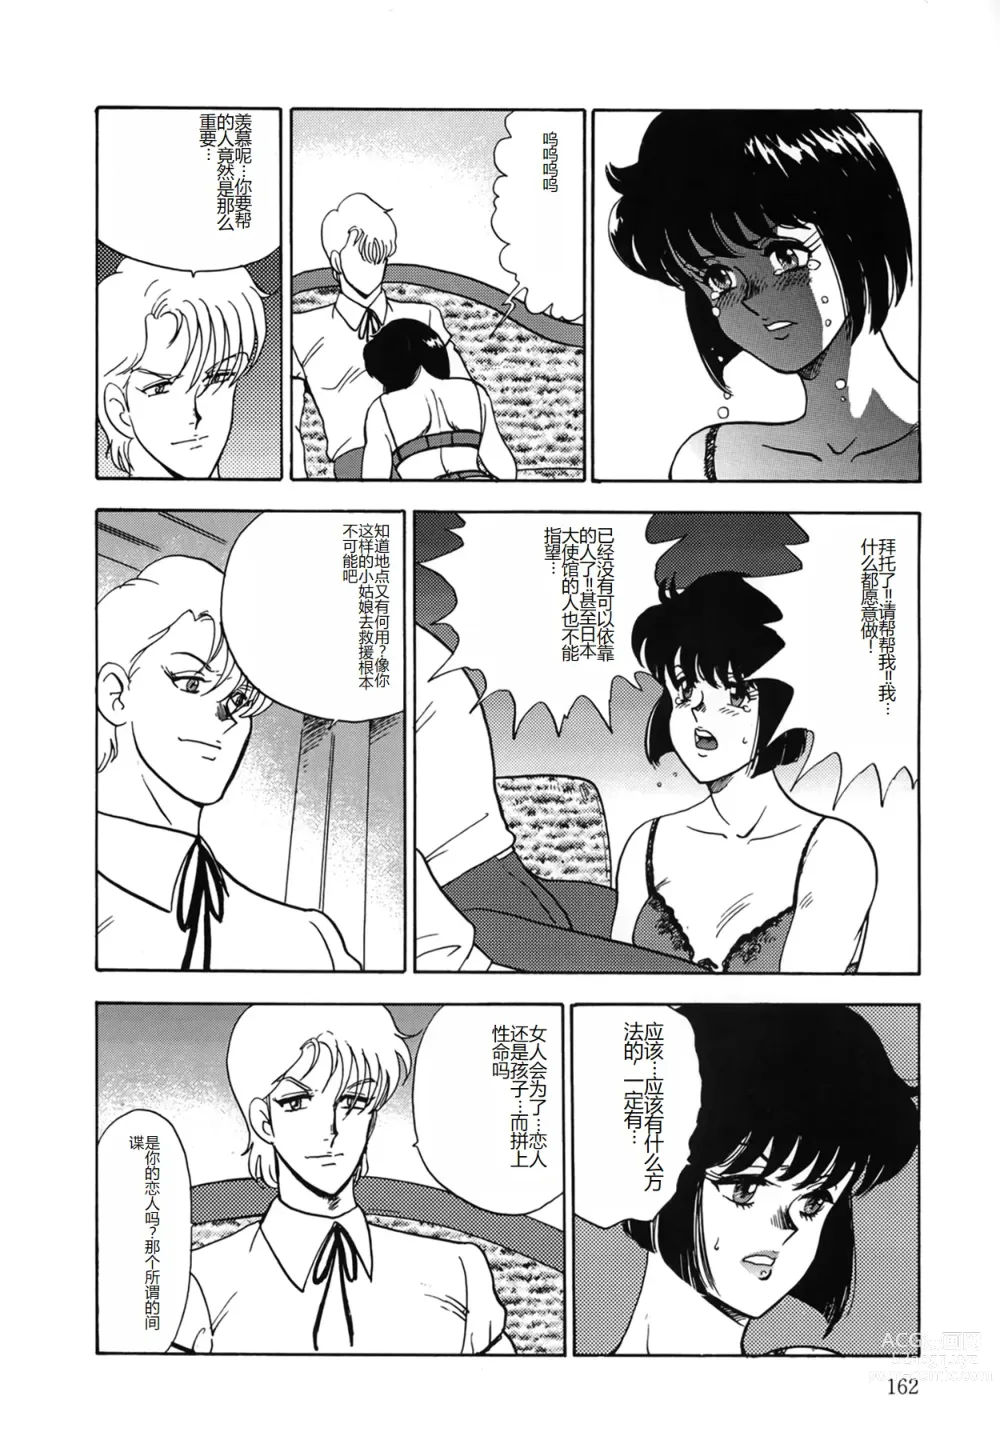 Page 162 of manga Inbi Teikoku